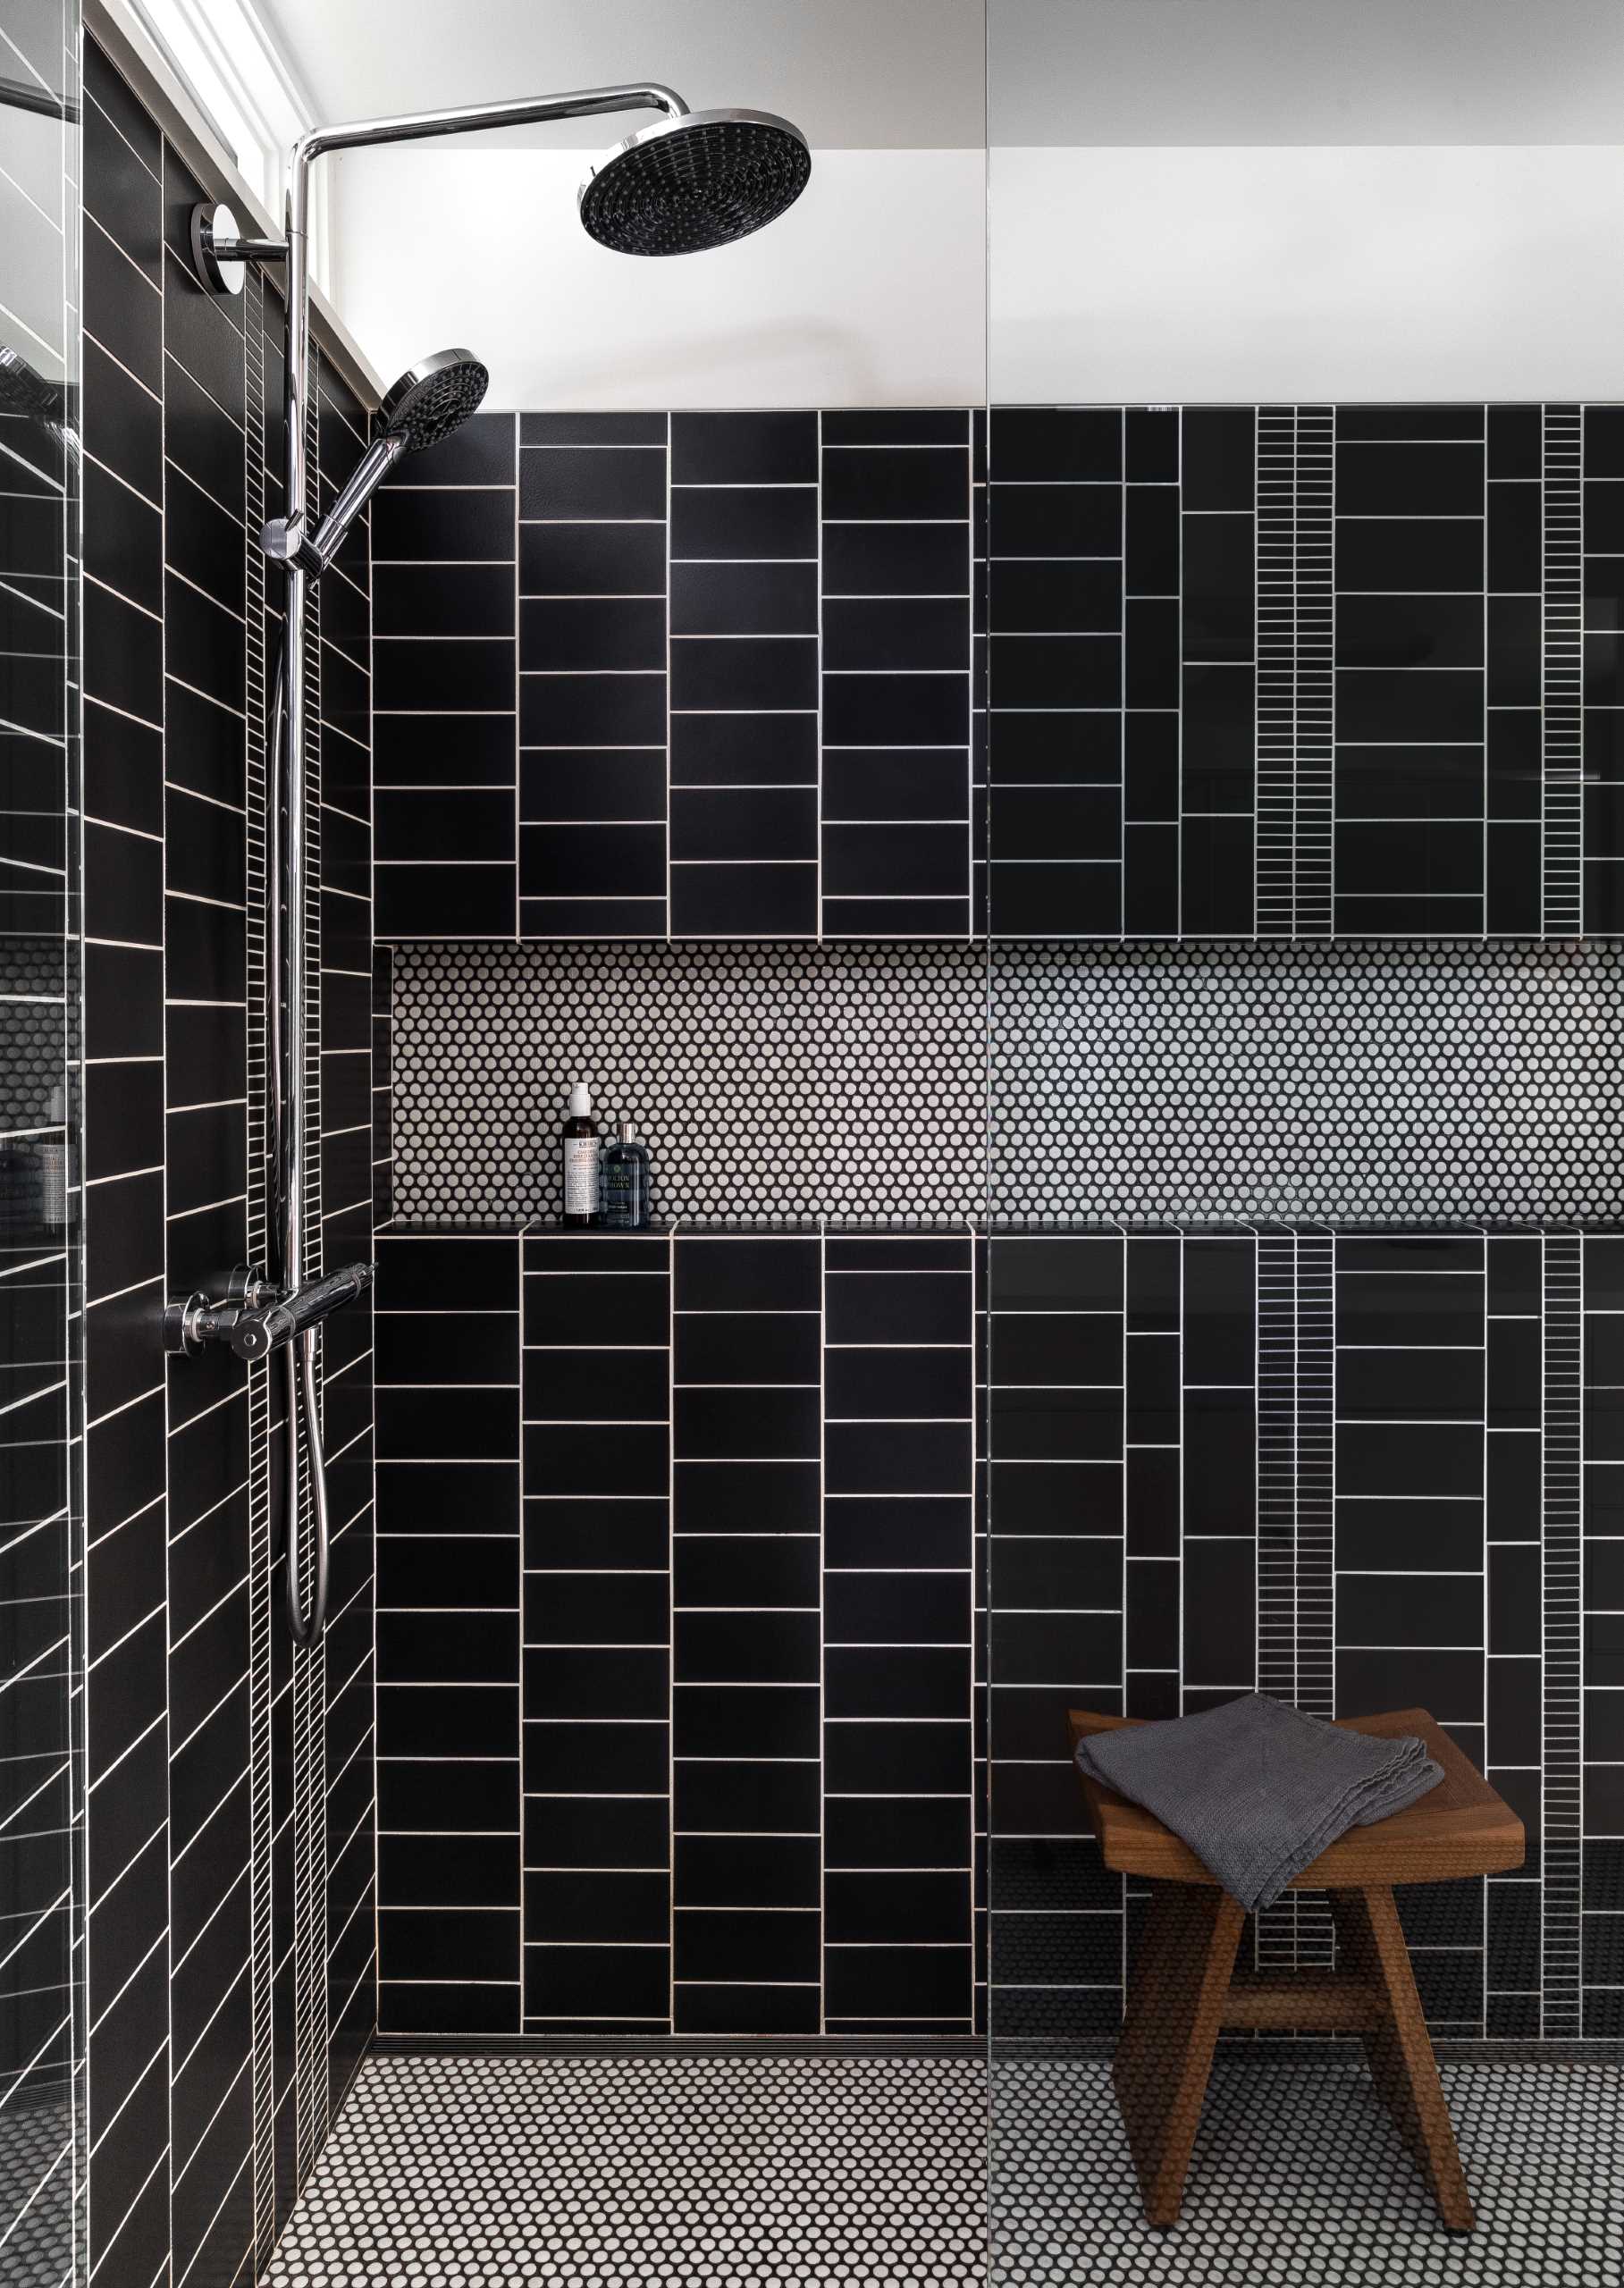 В этой современной ванной комнате для облицовки душа была выбрана черно-белая плитка, а контрастная затирка позволяет выделить каждую форму плитки.